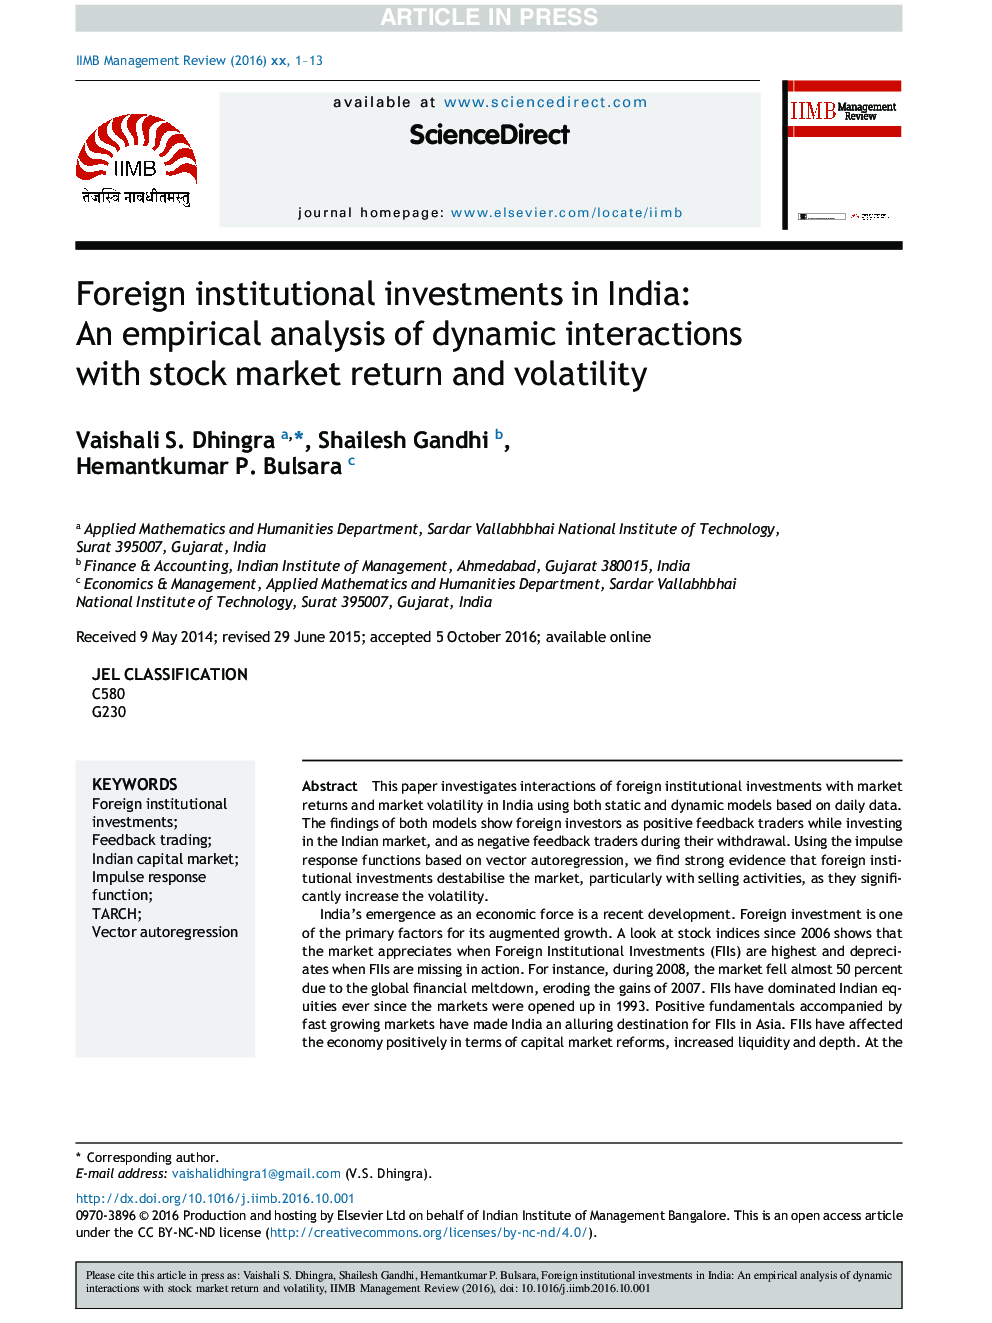 سرمایه گذاری های سرمایه گذاری خارجی در هند: یک تحلیل تجربی از تعاملات پویا با بازده سهام و نوسانات بازار سهام 